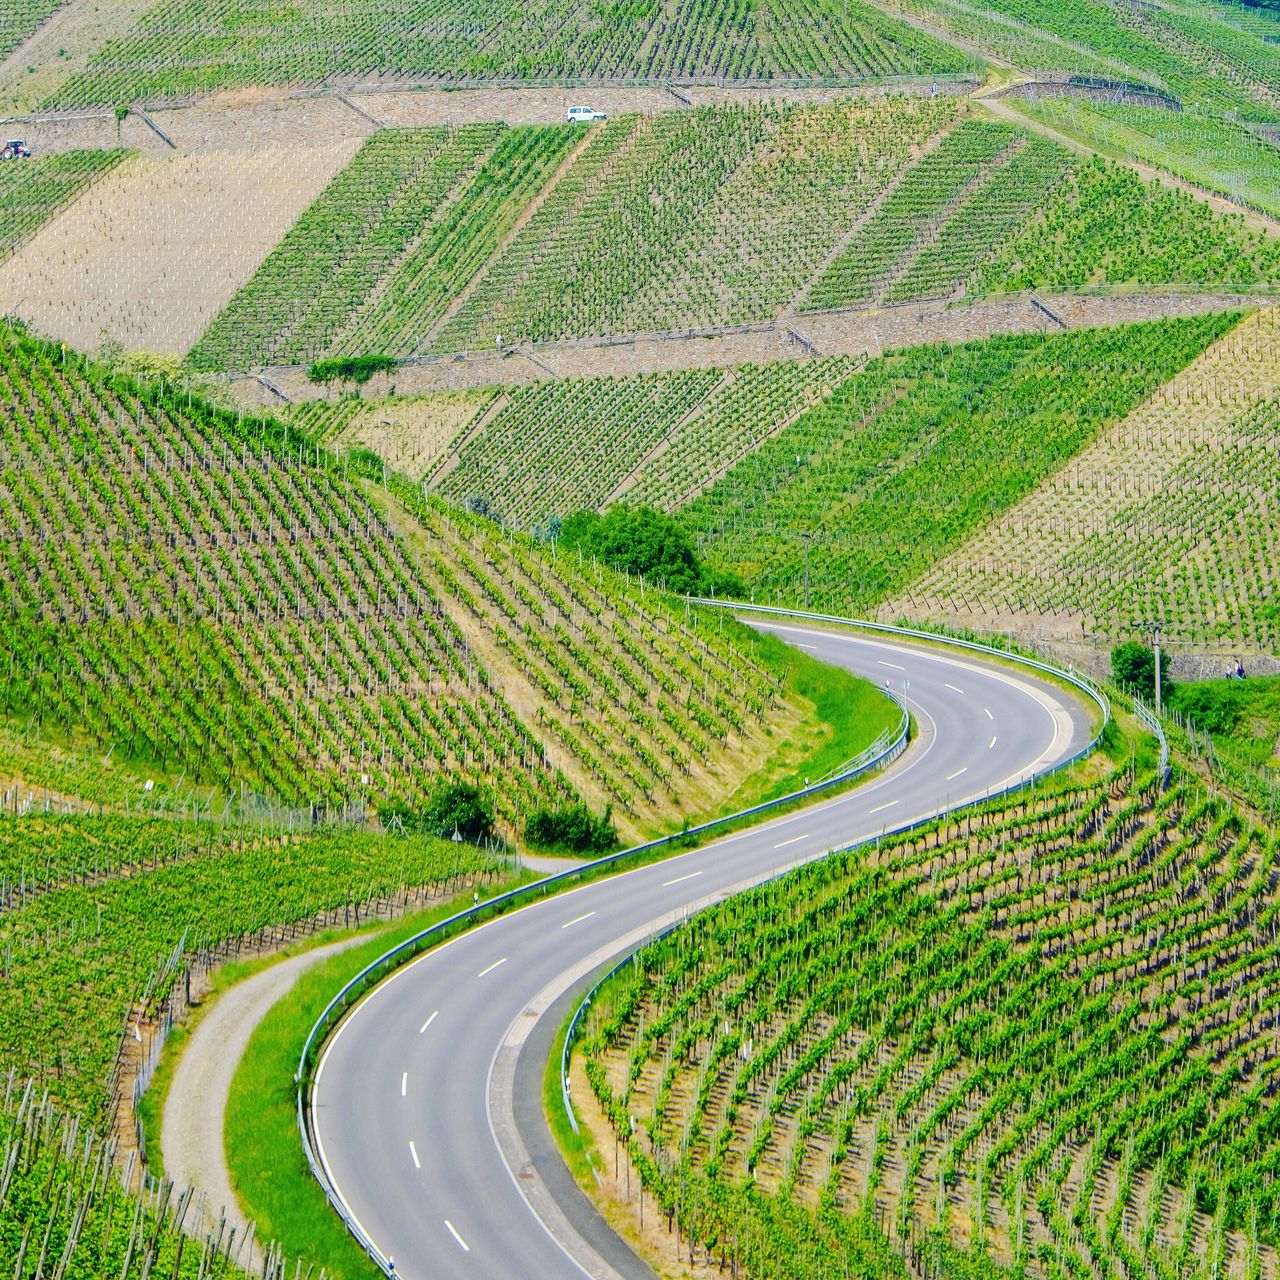 Road through vineyards.